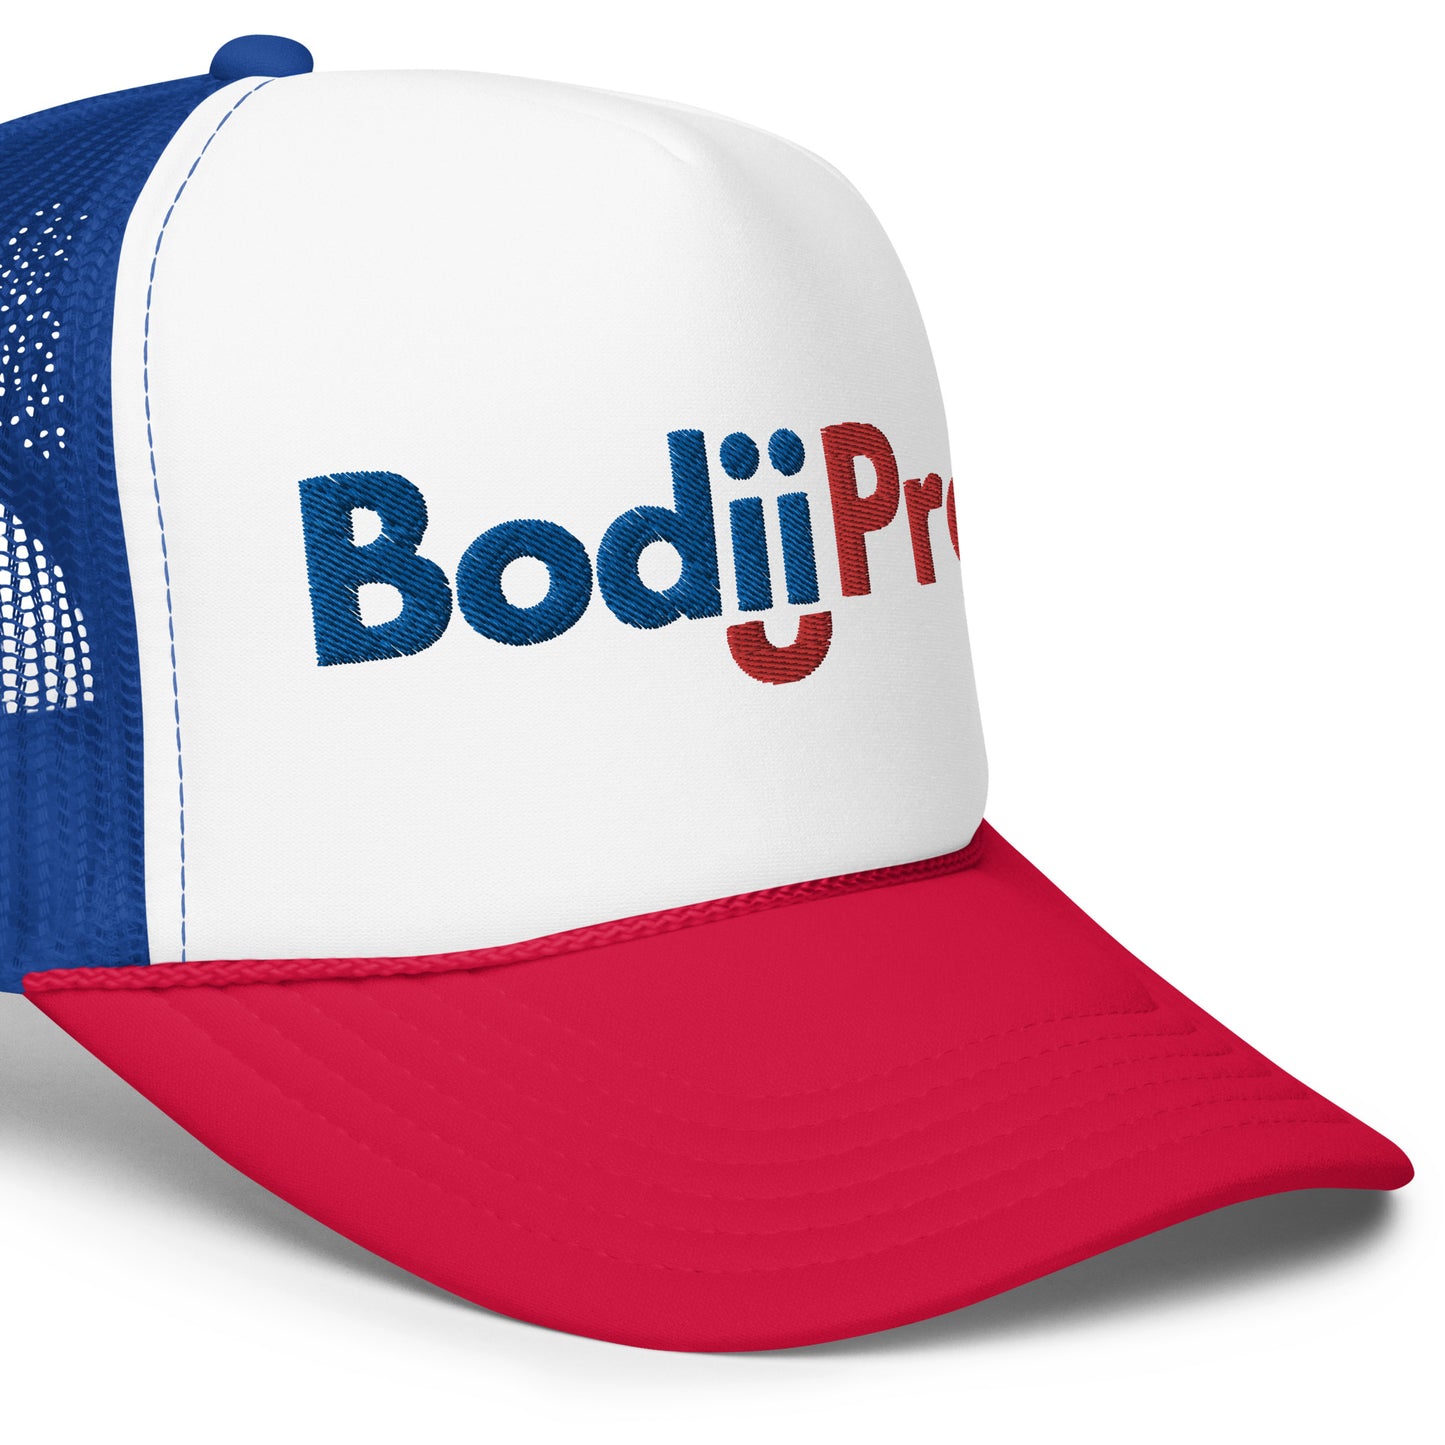 BodiiPro Foam Trucker Hat BodiiPro